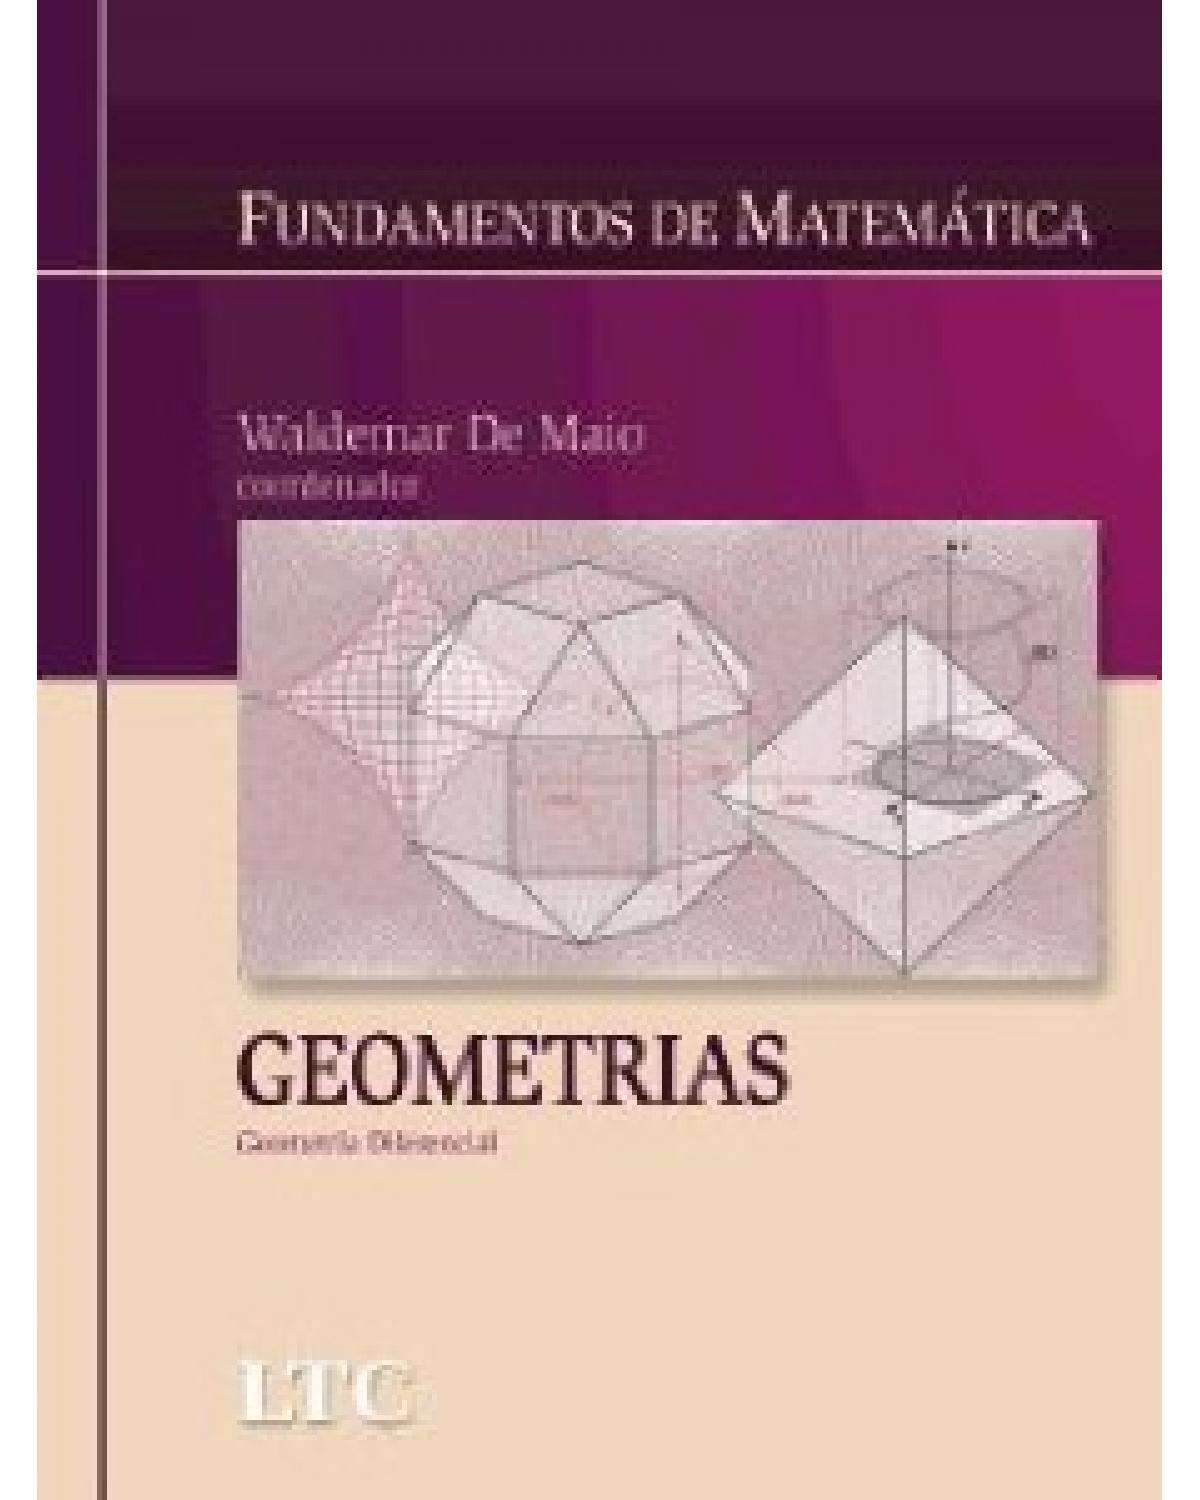 Fundamentos de matemática - Geometrias - Geometria diferencial - 1ª Edição | 2007